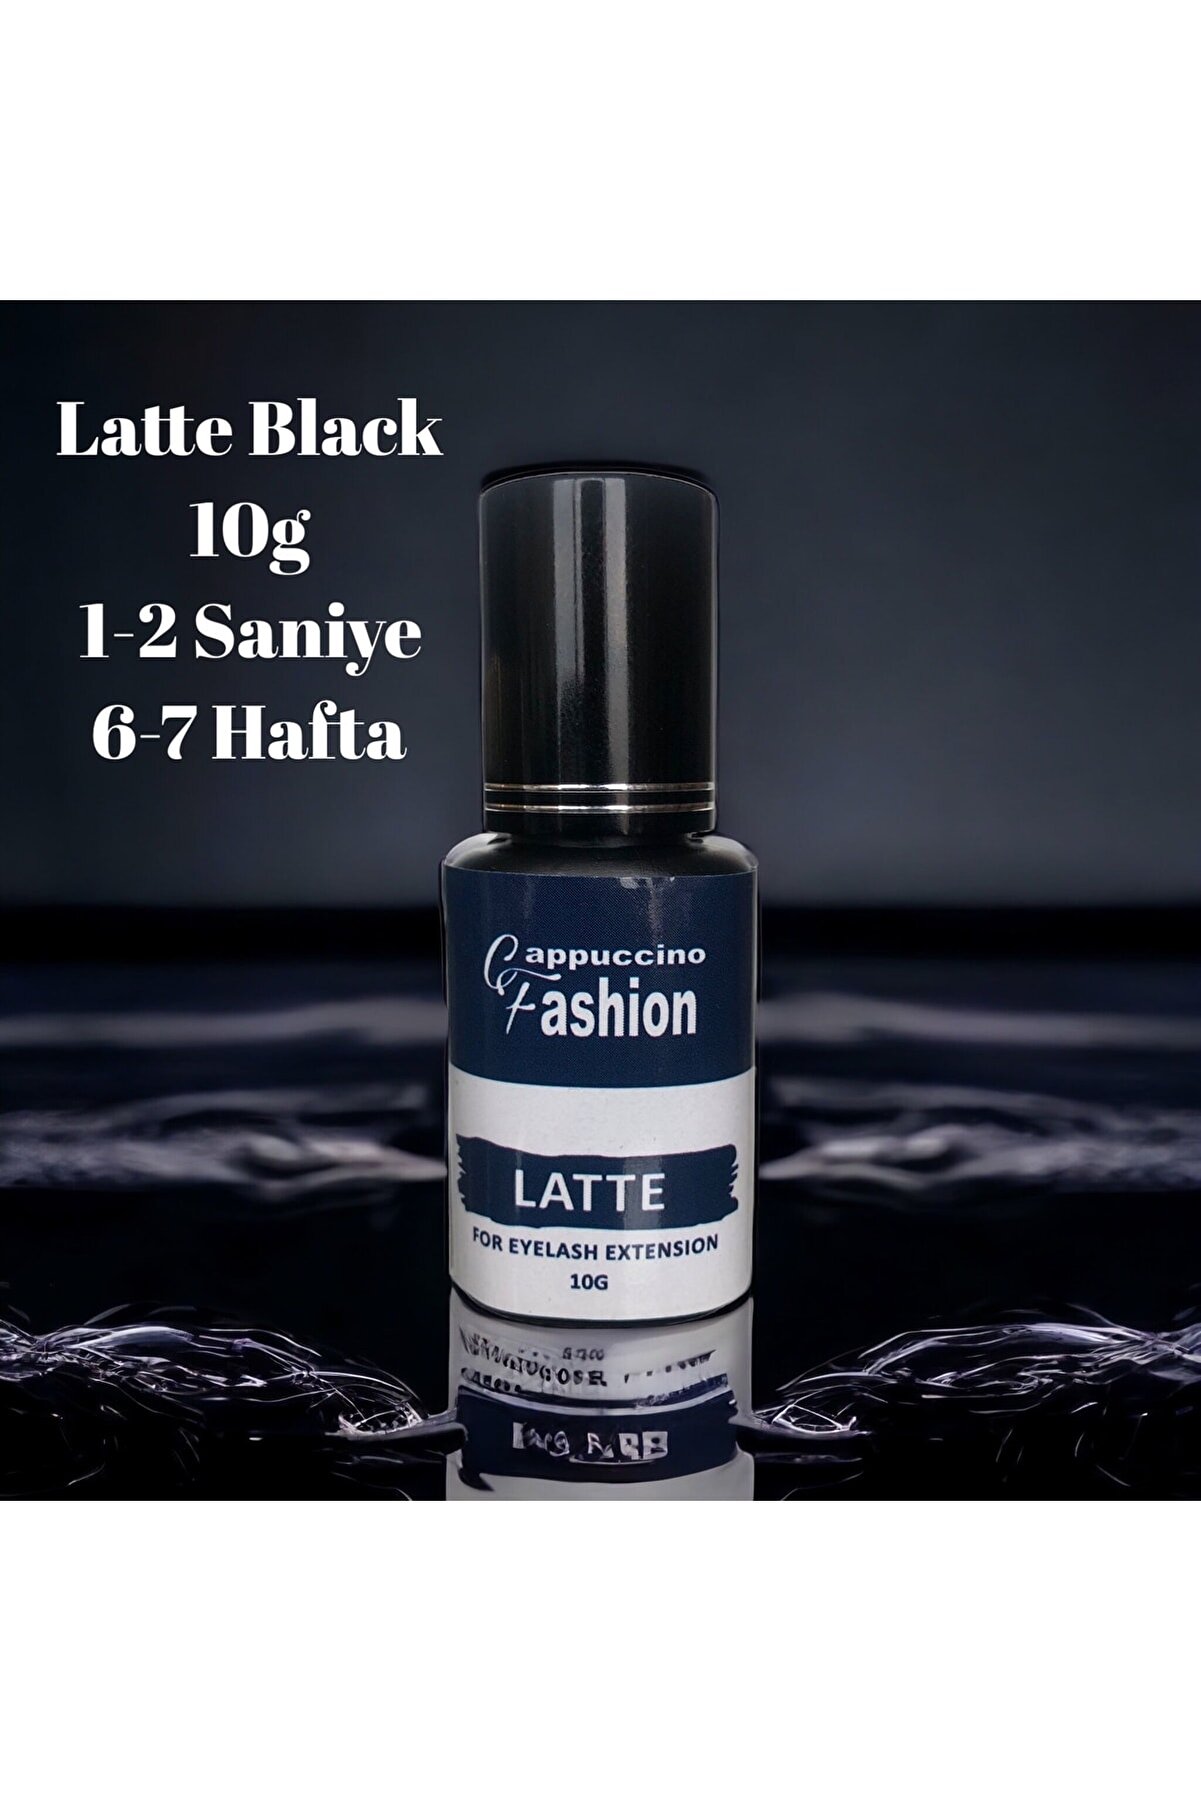 CAPPUCCİNO FASHİON Ipek Kirpik Yapıştırıcı Latte Black 10 G